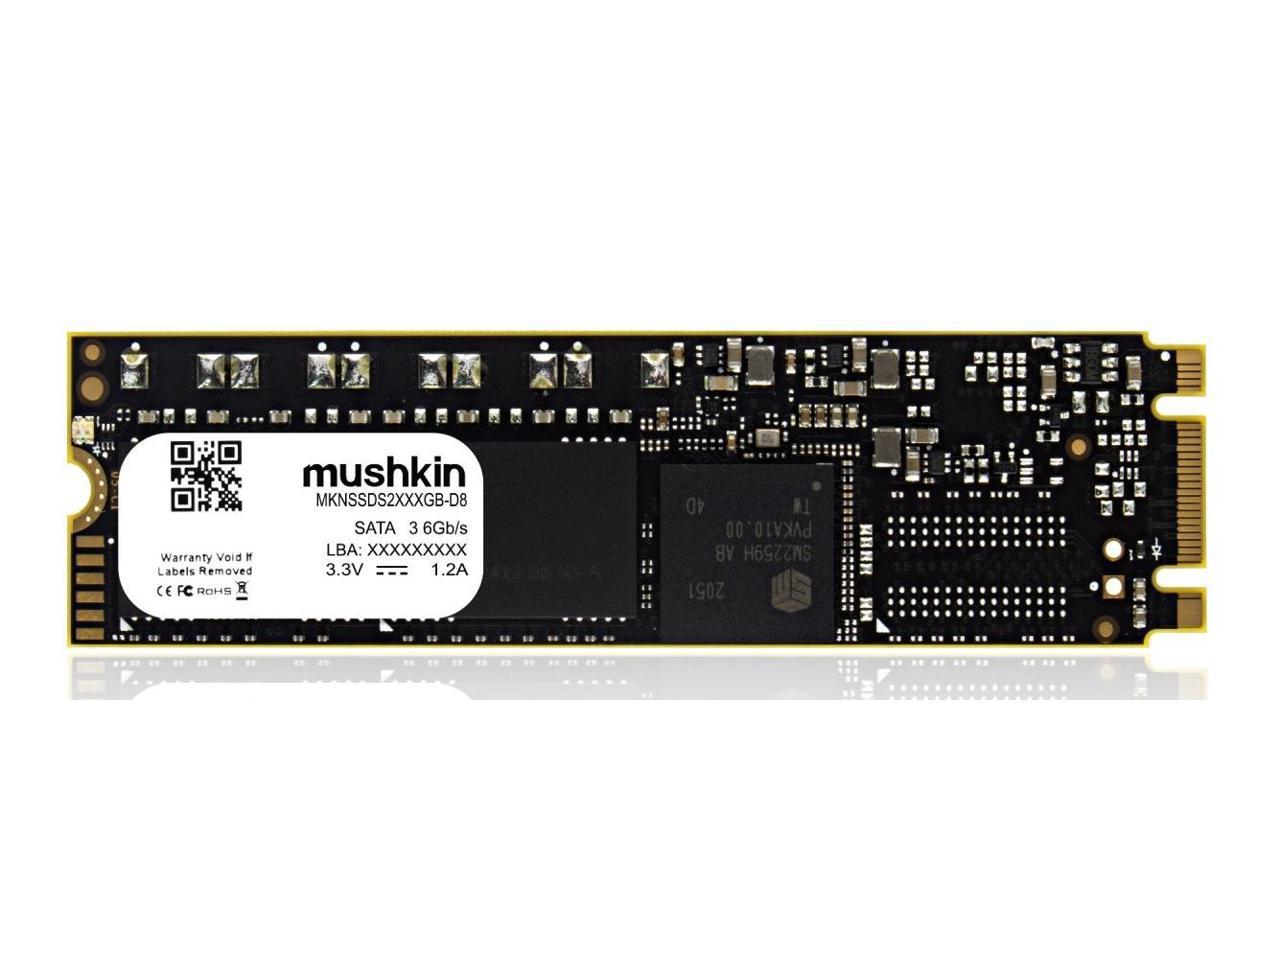 Mushkin Enhanced -512GB Solid State Drive - Source 2 - M.2 - 3D - SATA-III 6Gb/s - Model - MKNSSDS2512GB-D8